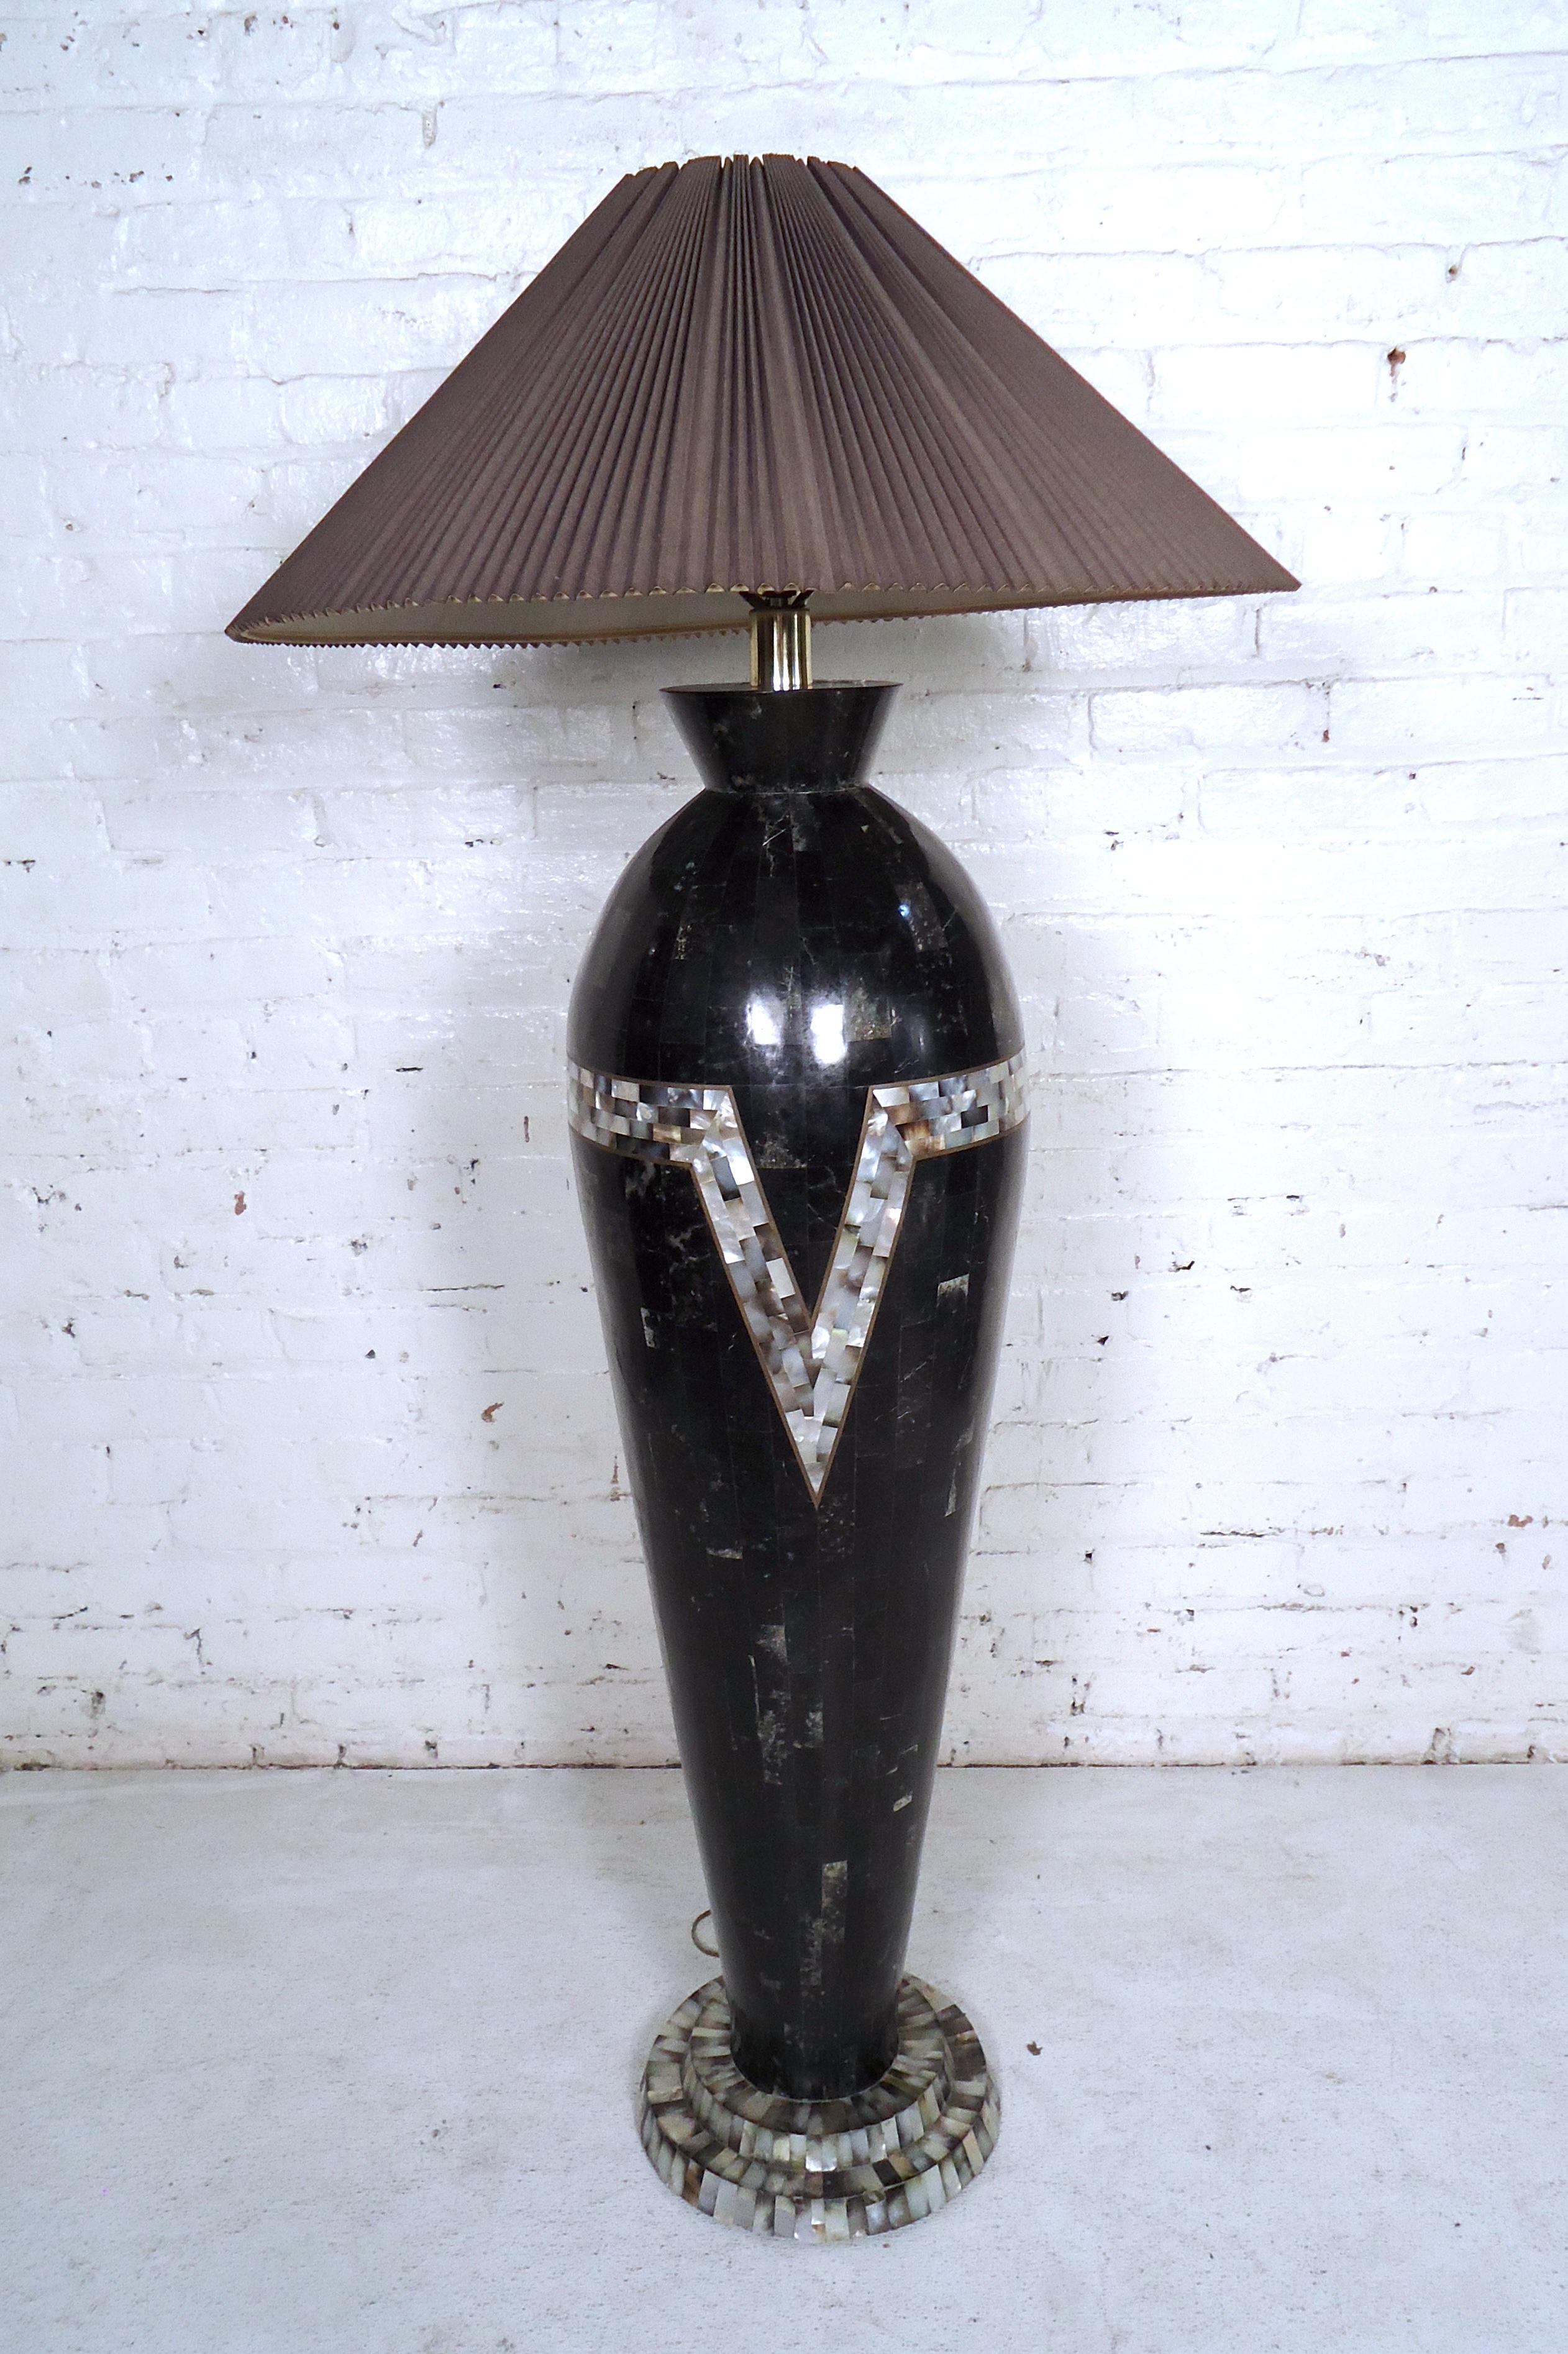 Magnifique lampadaire noir vintage moderne avec un design unique de carreaux de mosaïque au centre et en bas.

(Veuillez confirmer l'emplacement de l'article - NY ou NJ - avec le concessionnaire).